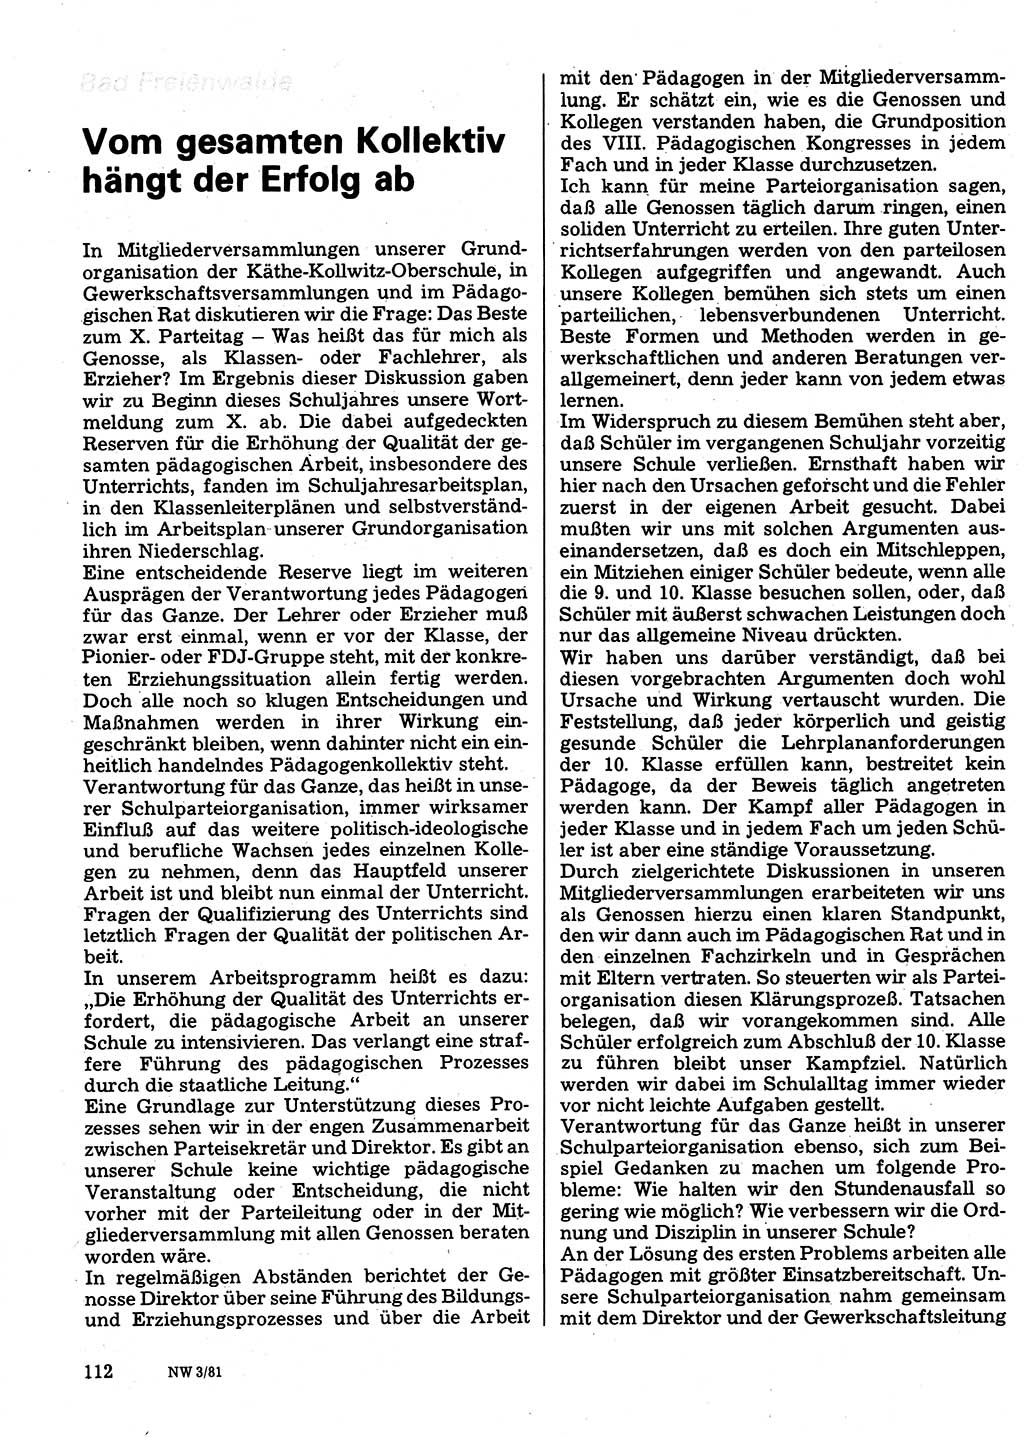 Neuer Weg (NW), Organ des Zentralkomitees (ZK) der SED (Sozialistische Einheitspartei Deutschlands) für Fragen des Parteilebens, 36. Jahrgang [Deutsche Demokratische Republik (DDR)] 1981, Seite 112 (NW ZK SED DDR 1981, S. 112)